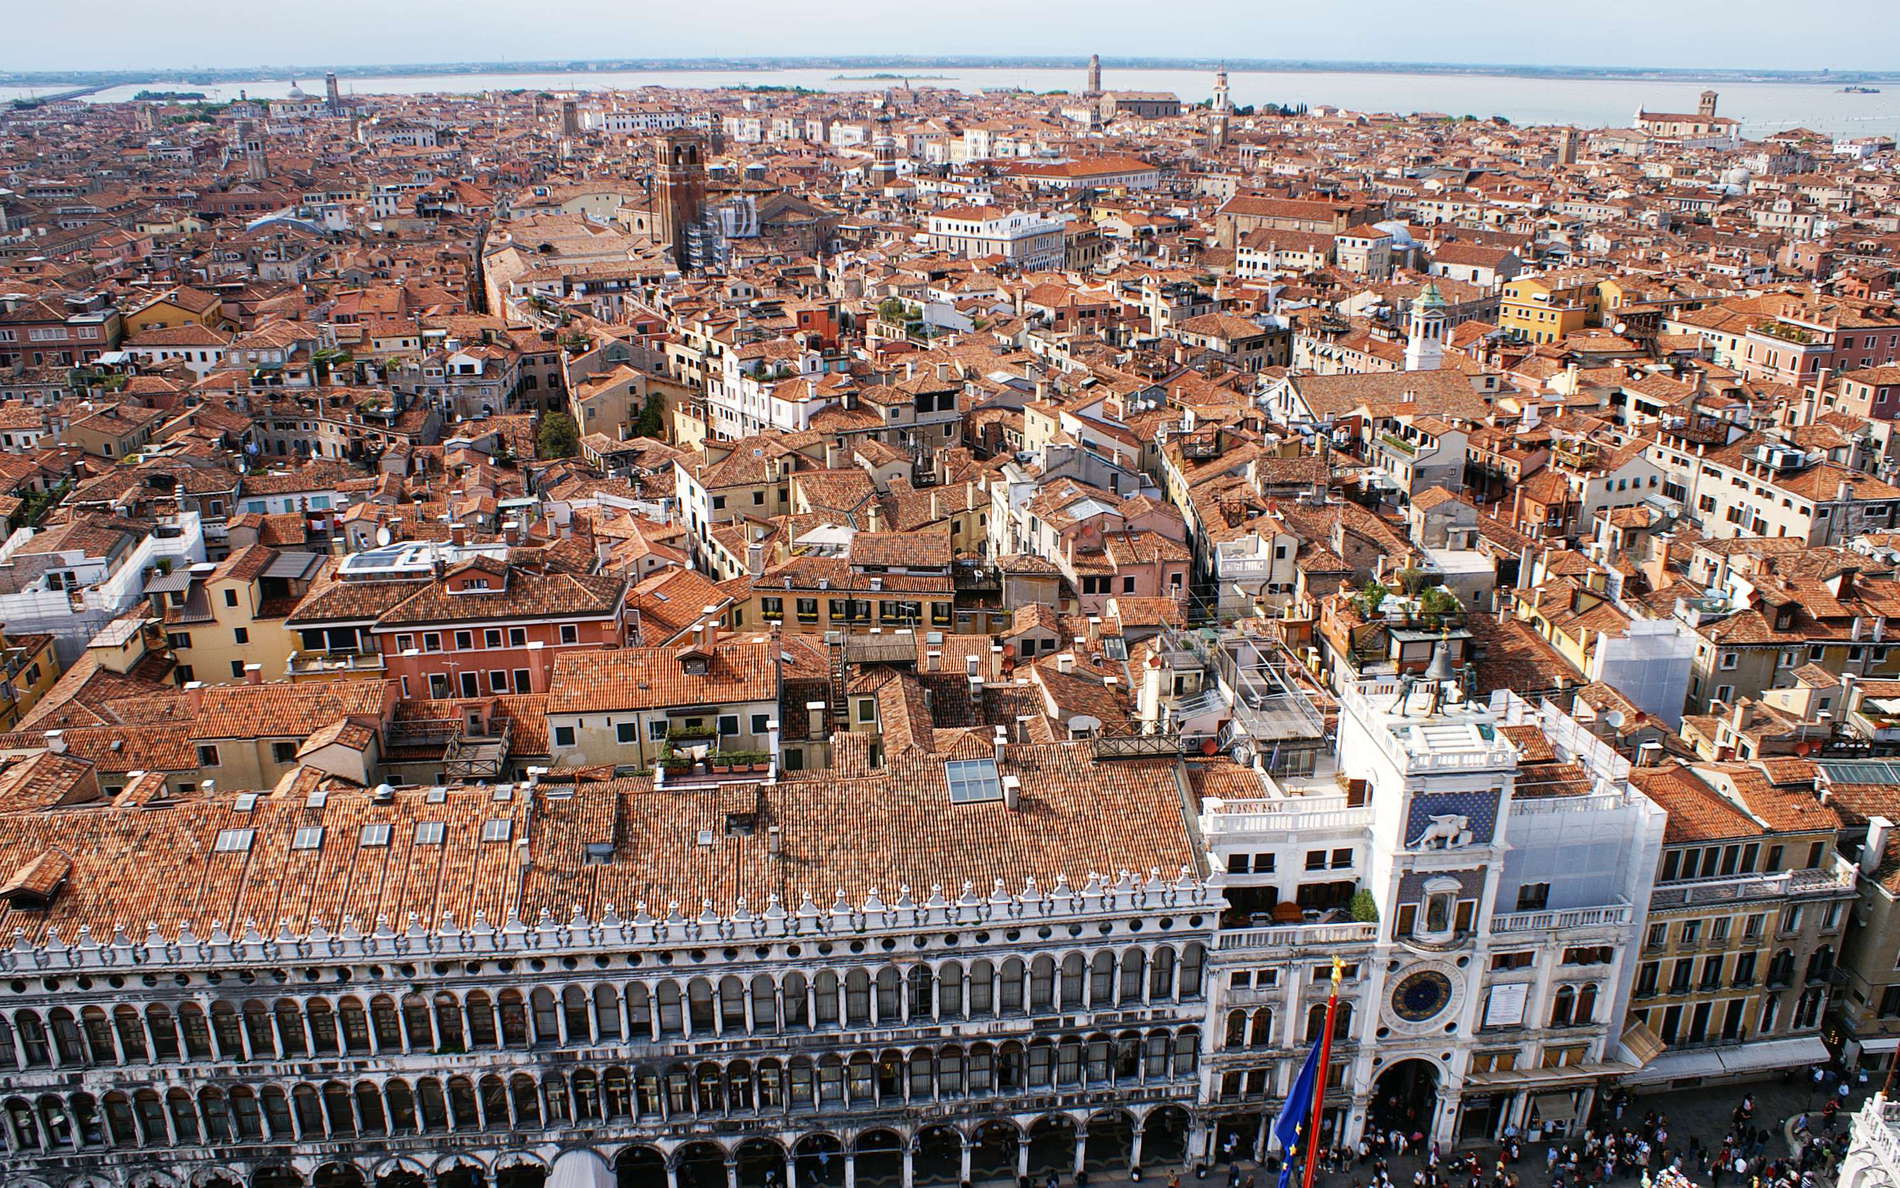 Venezia | San Marco with Torre dell'Orologio